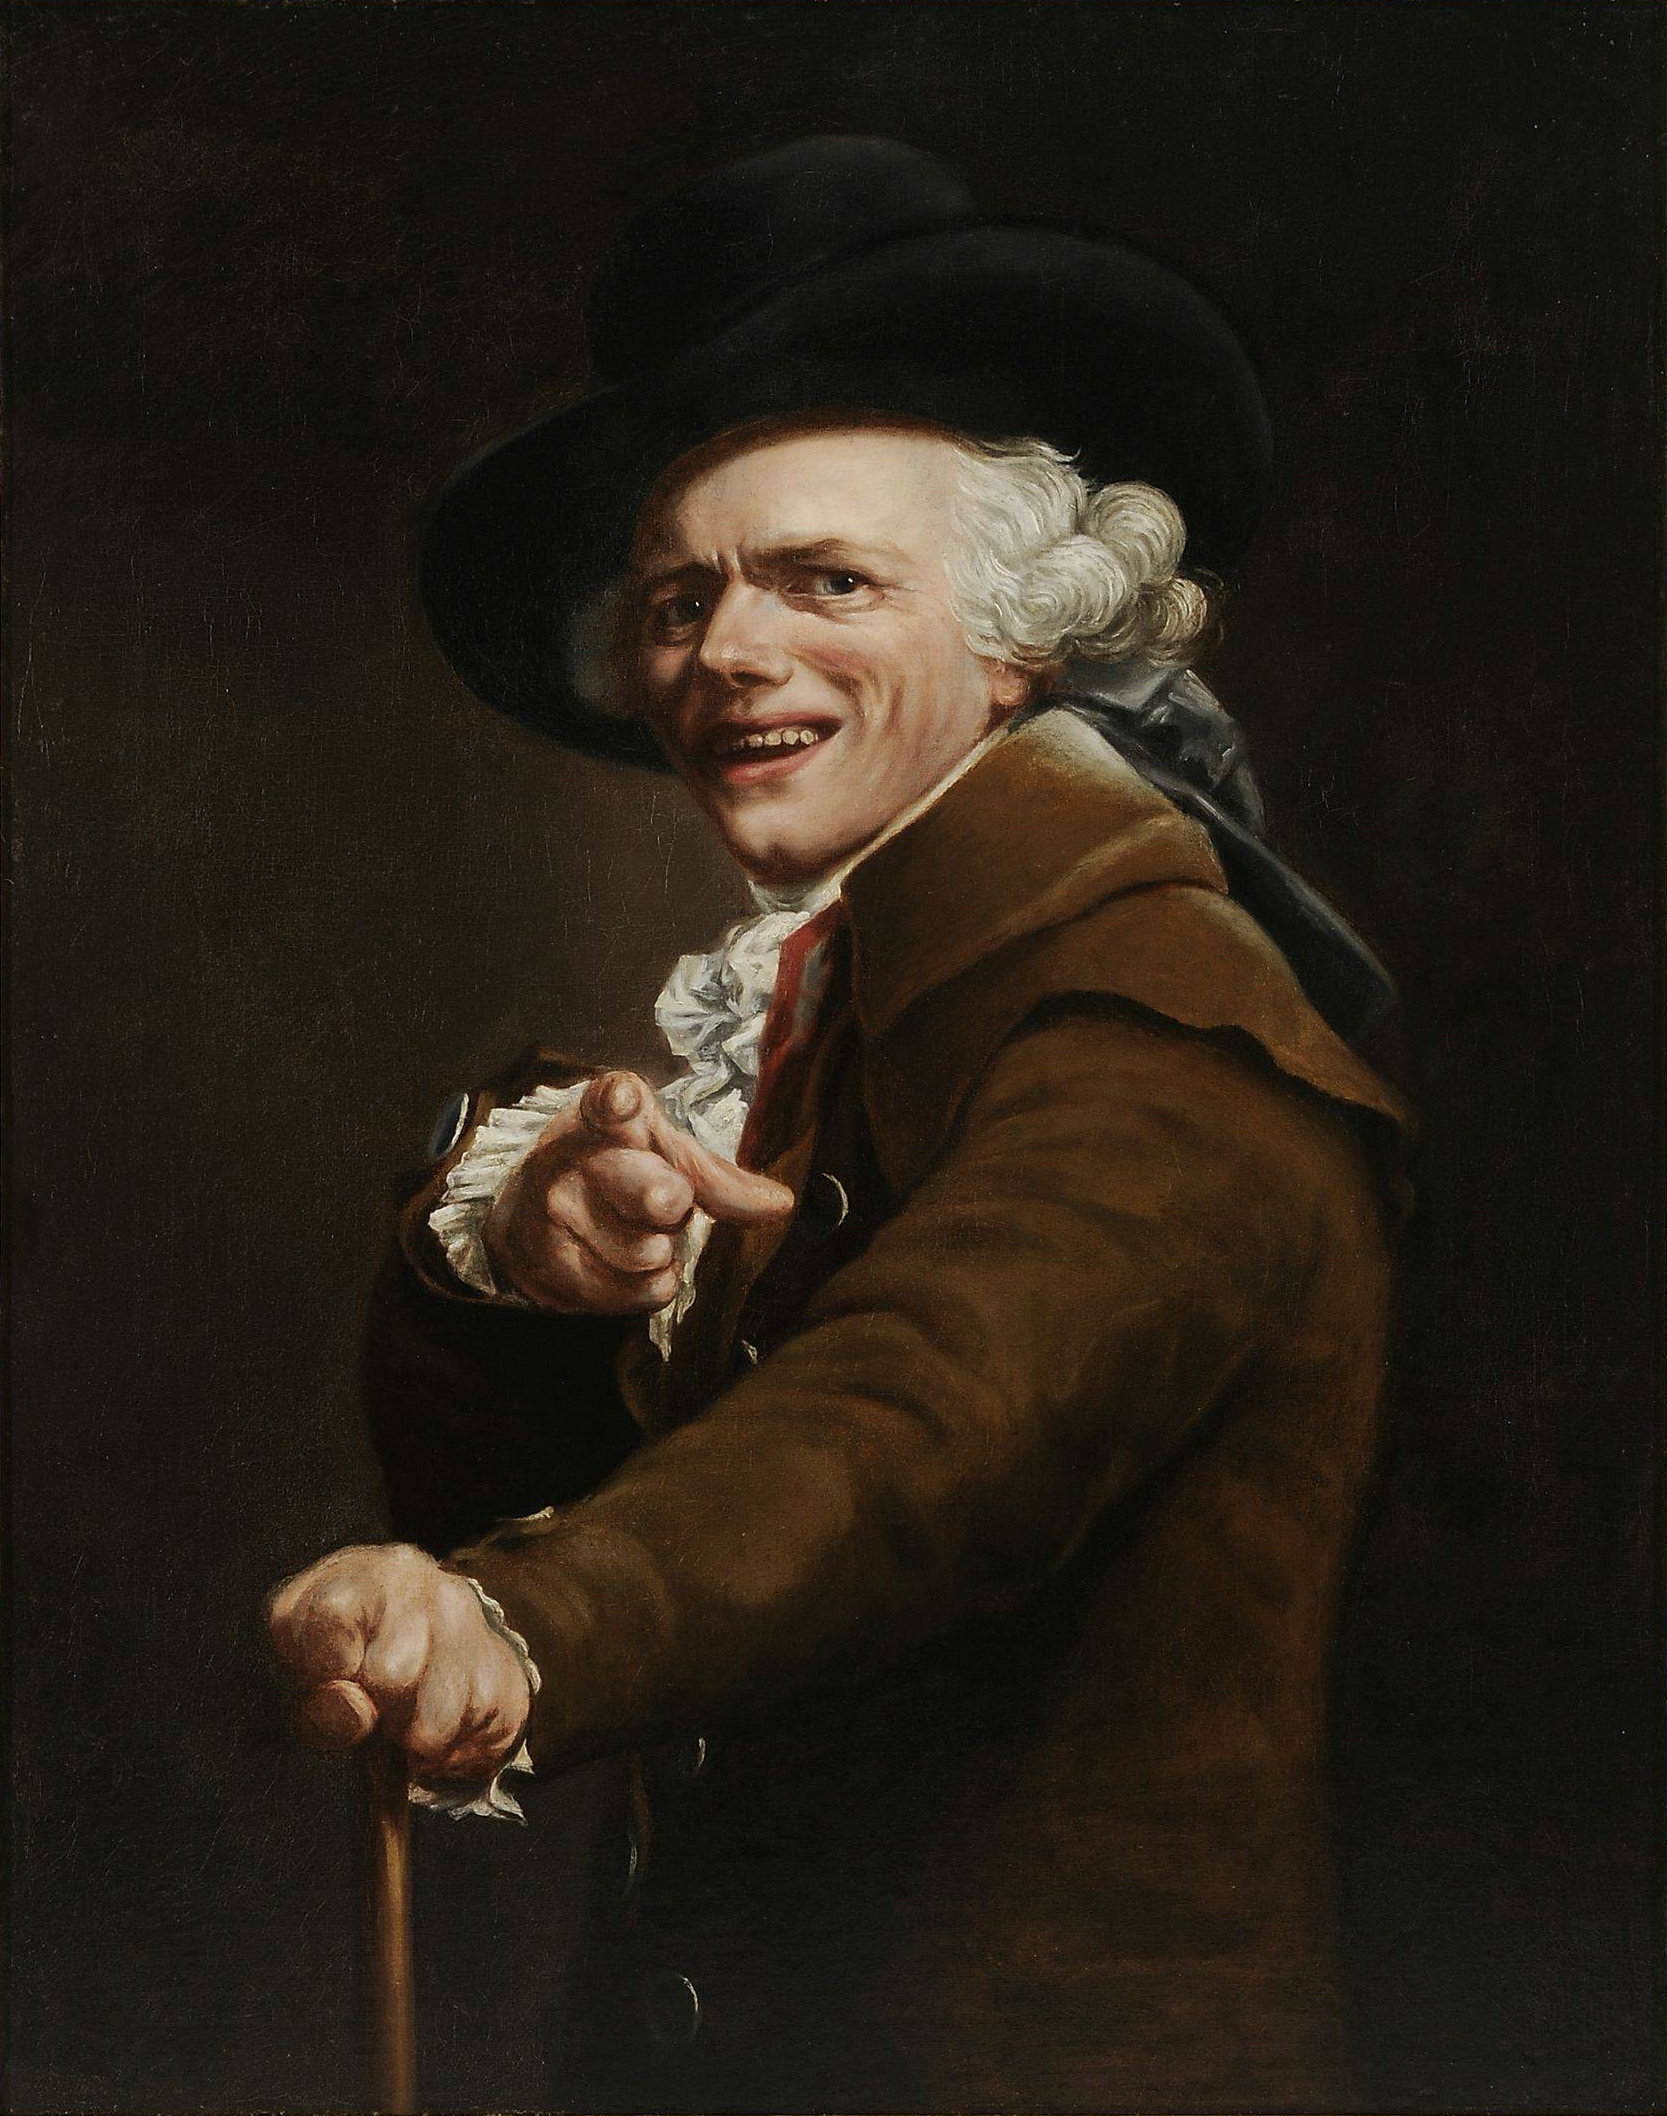 Joseph Ducreux - June 26, 1735 - July 24, 1802